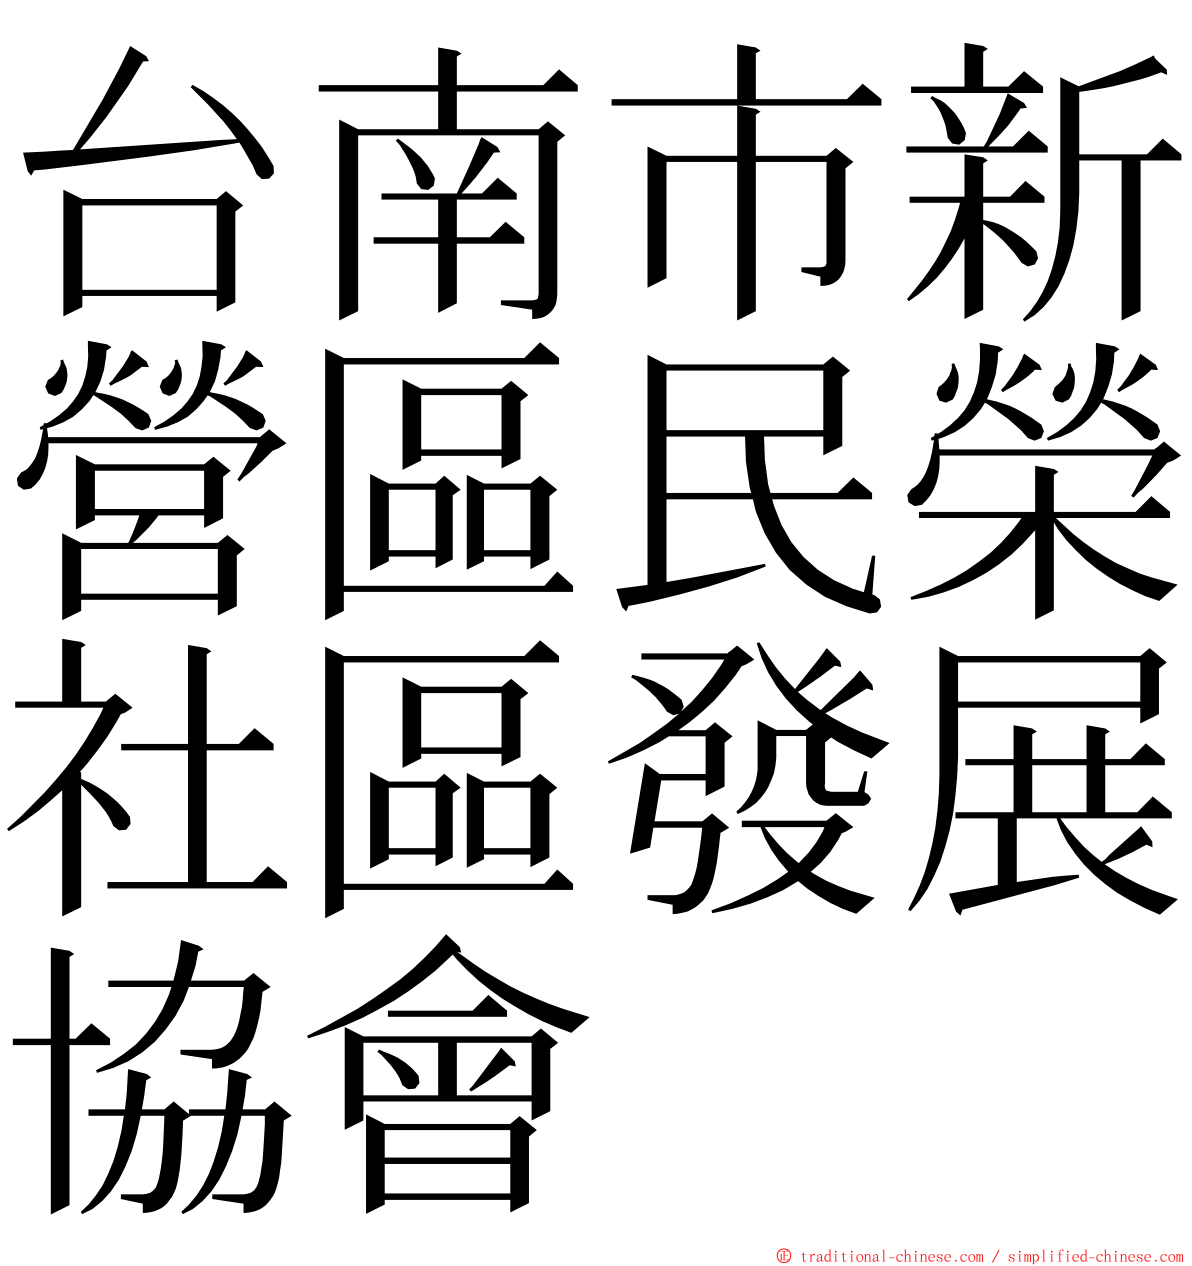 台南市新營區民榮社區發展協會 ming font